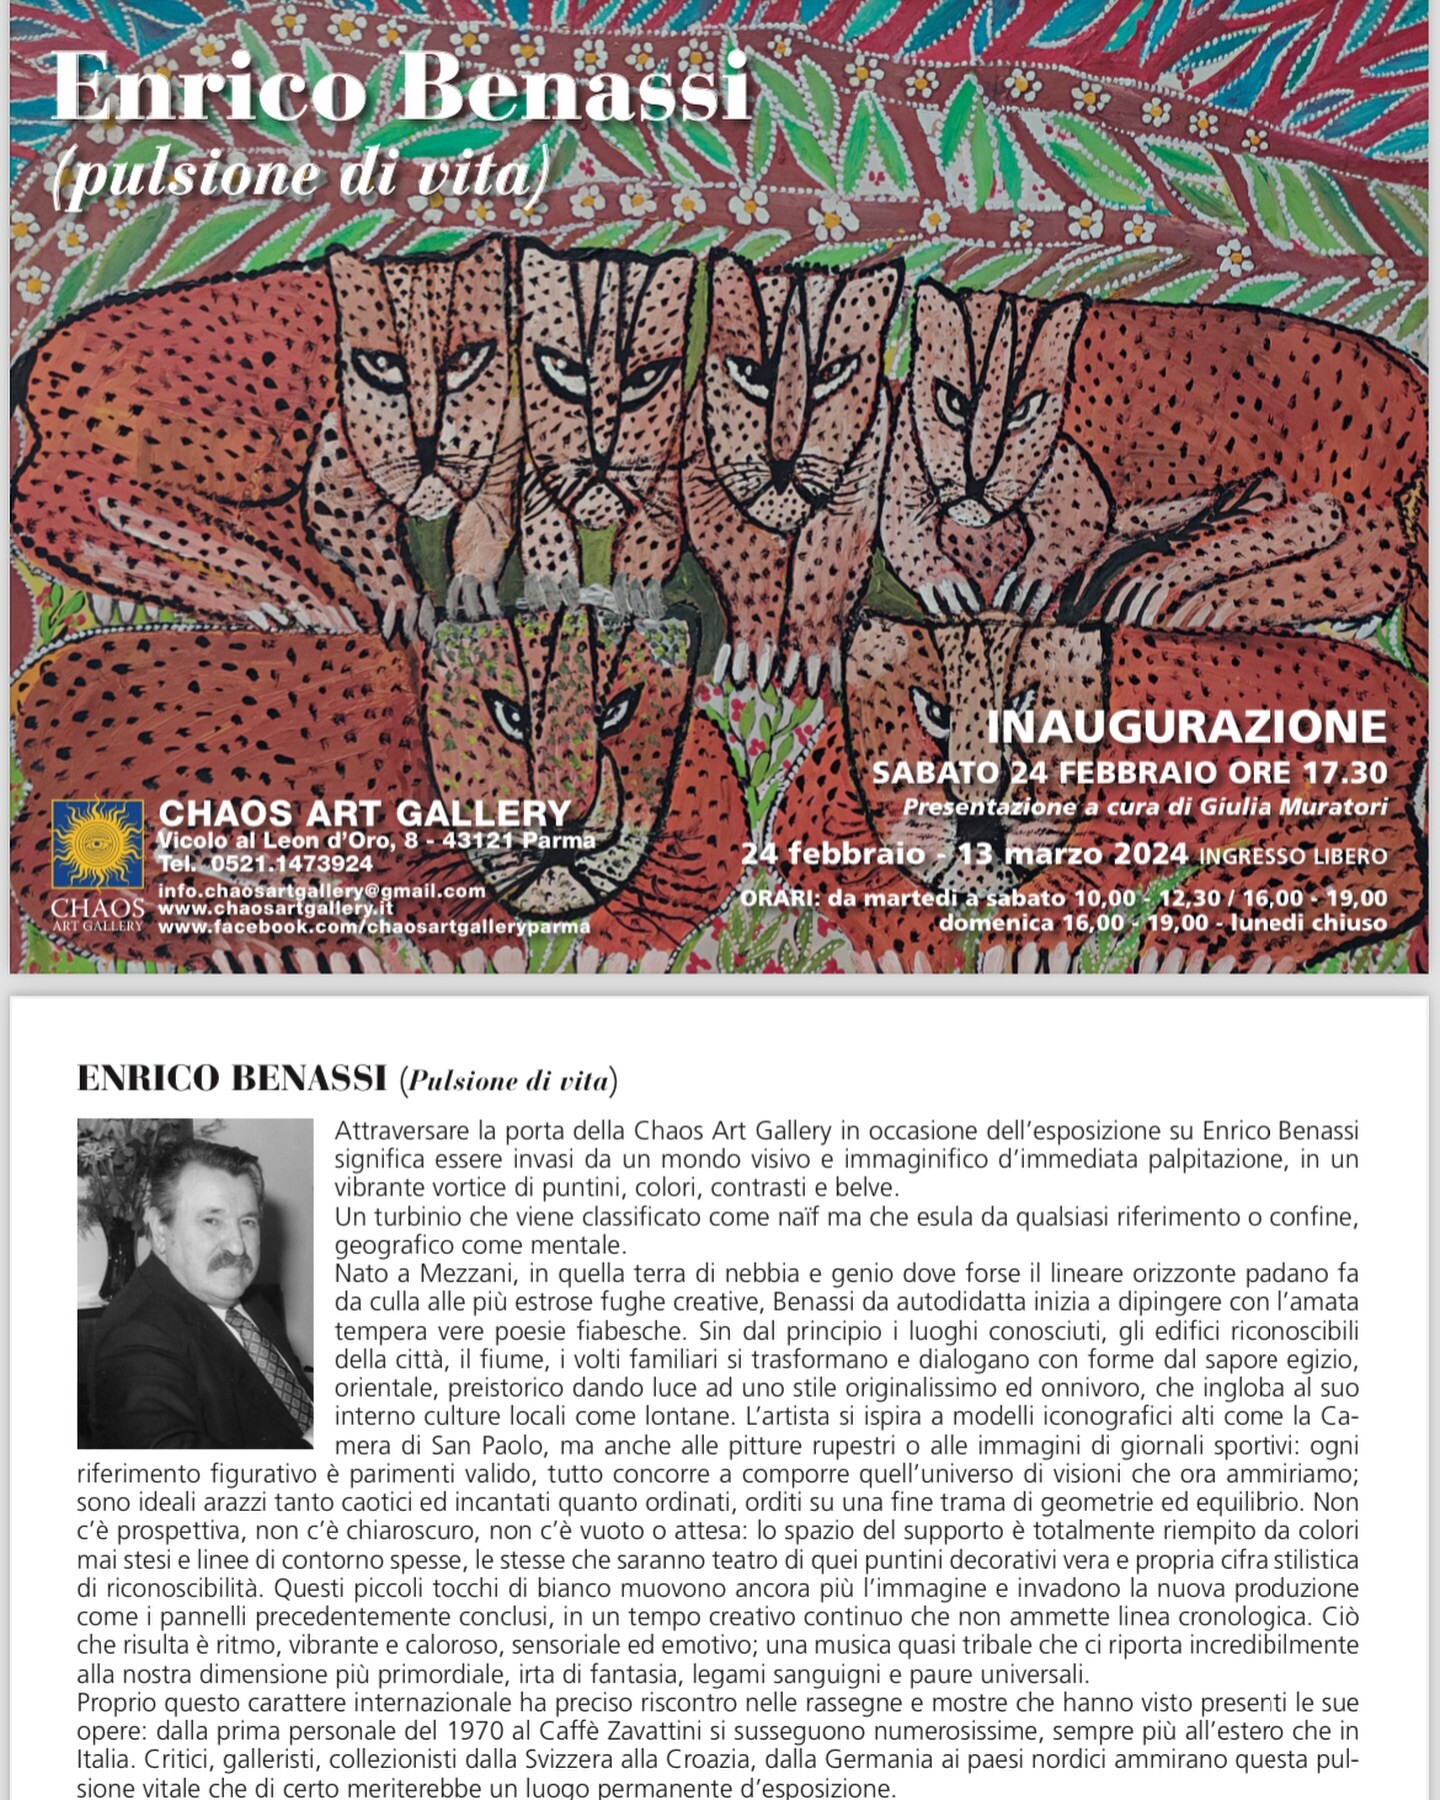 Enrico Benassi "pulsione di vita", in mostra a Parma